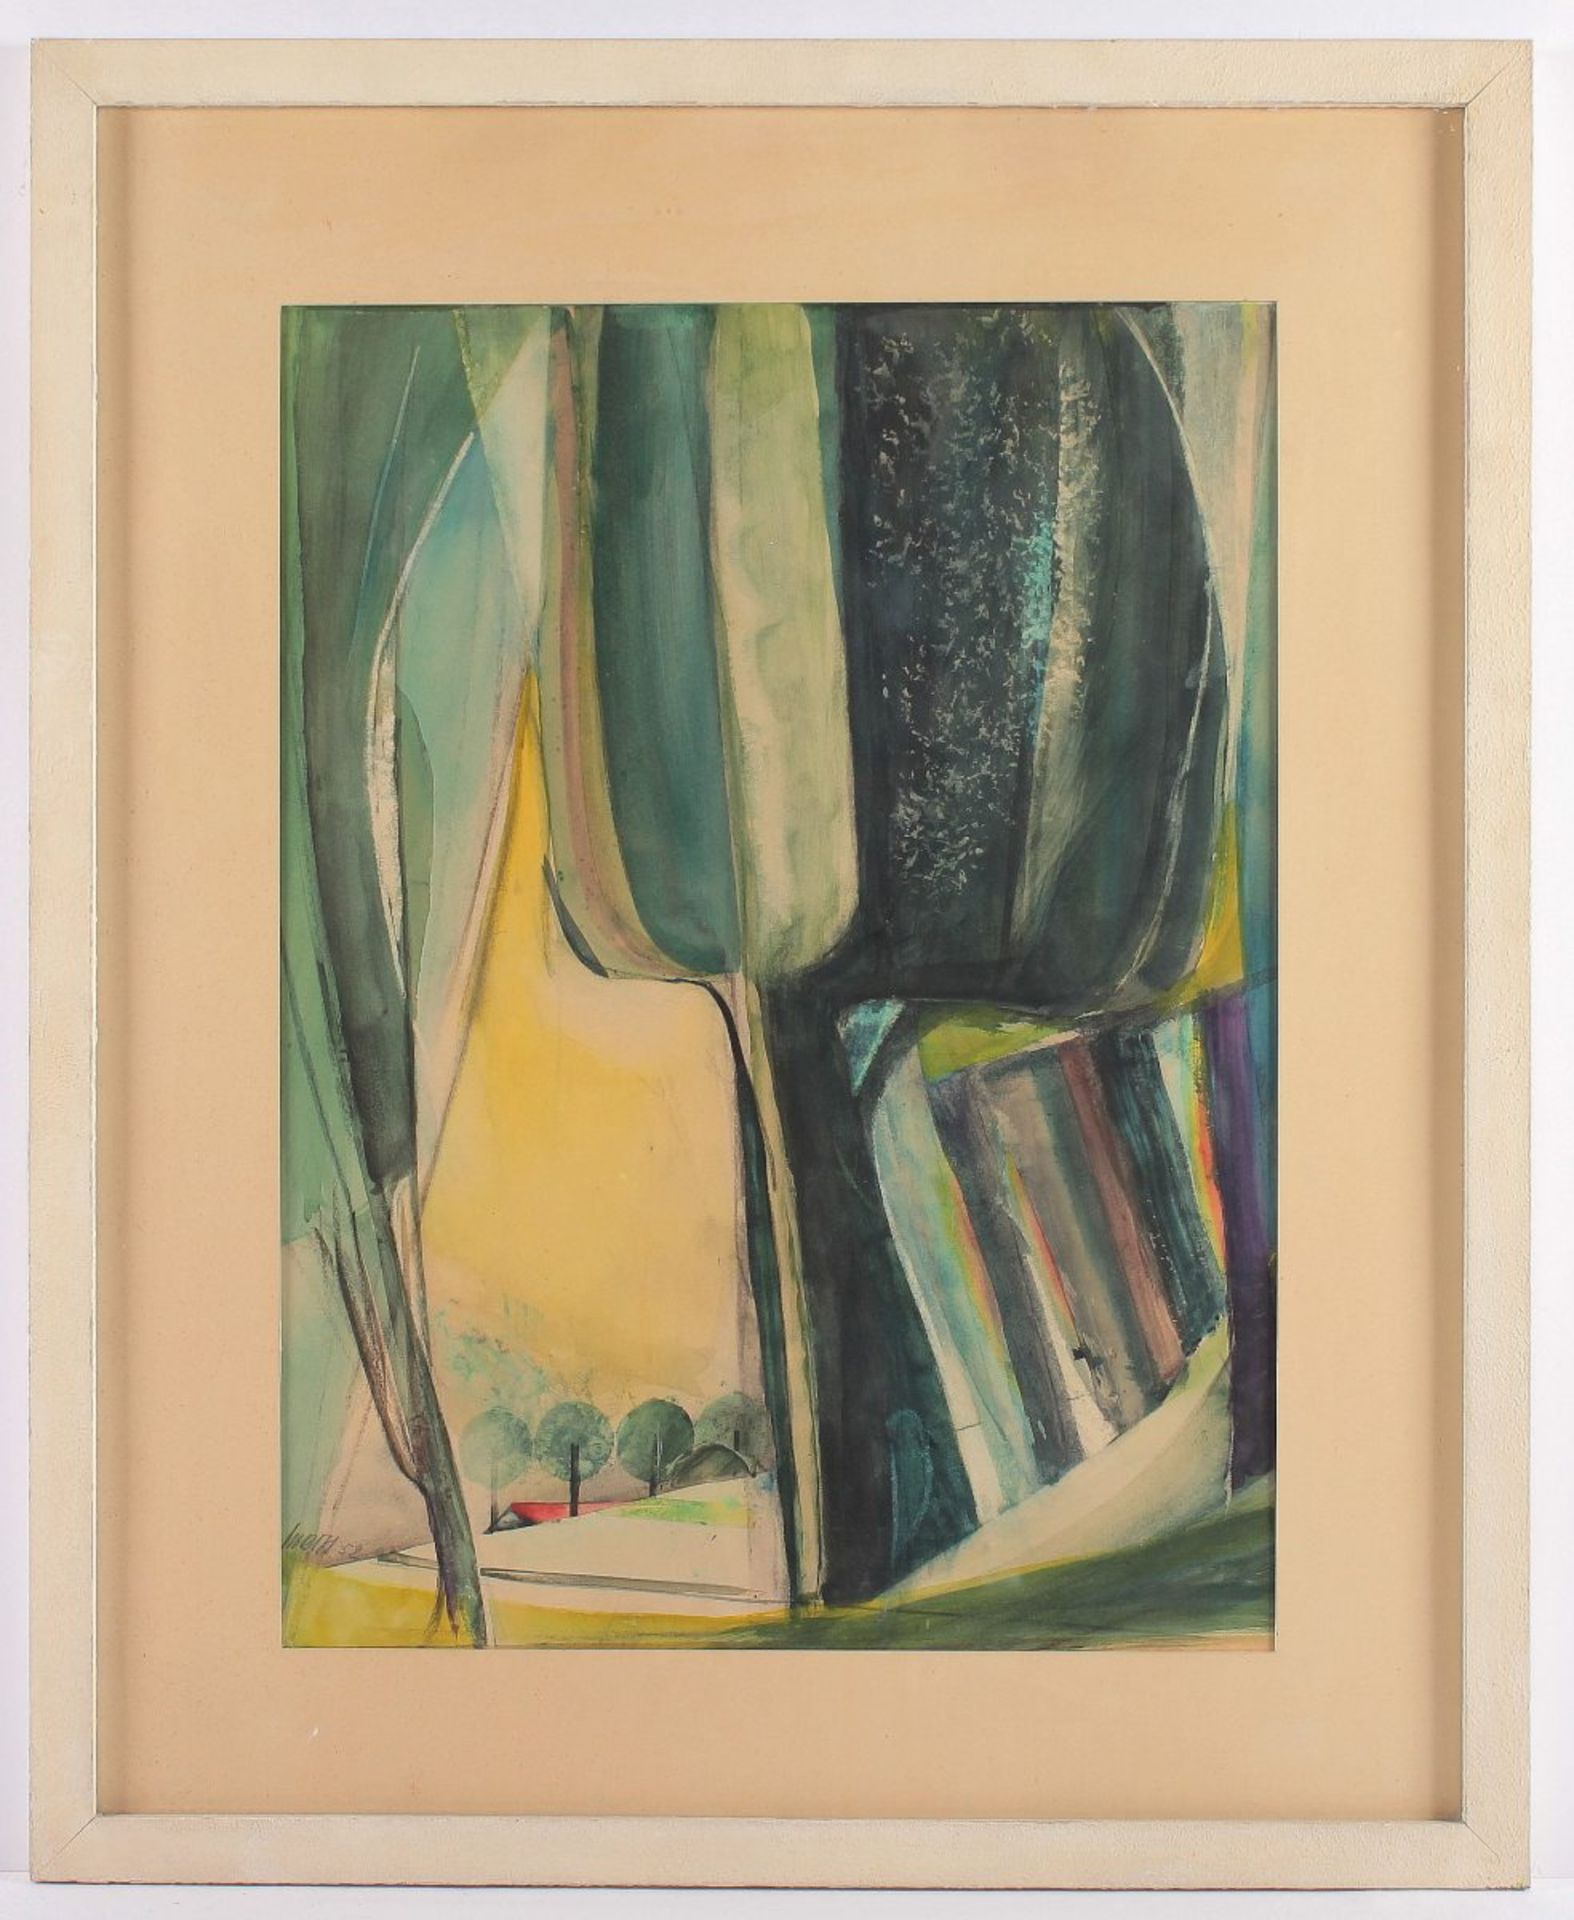 MODERNER KÜNSTLER, "Landschaft mit Haus", Aquarell/Papier, 59 x 43, unten links unleserlich signiert - Bild 2 aus 3